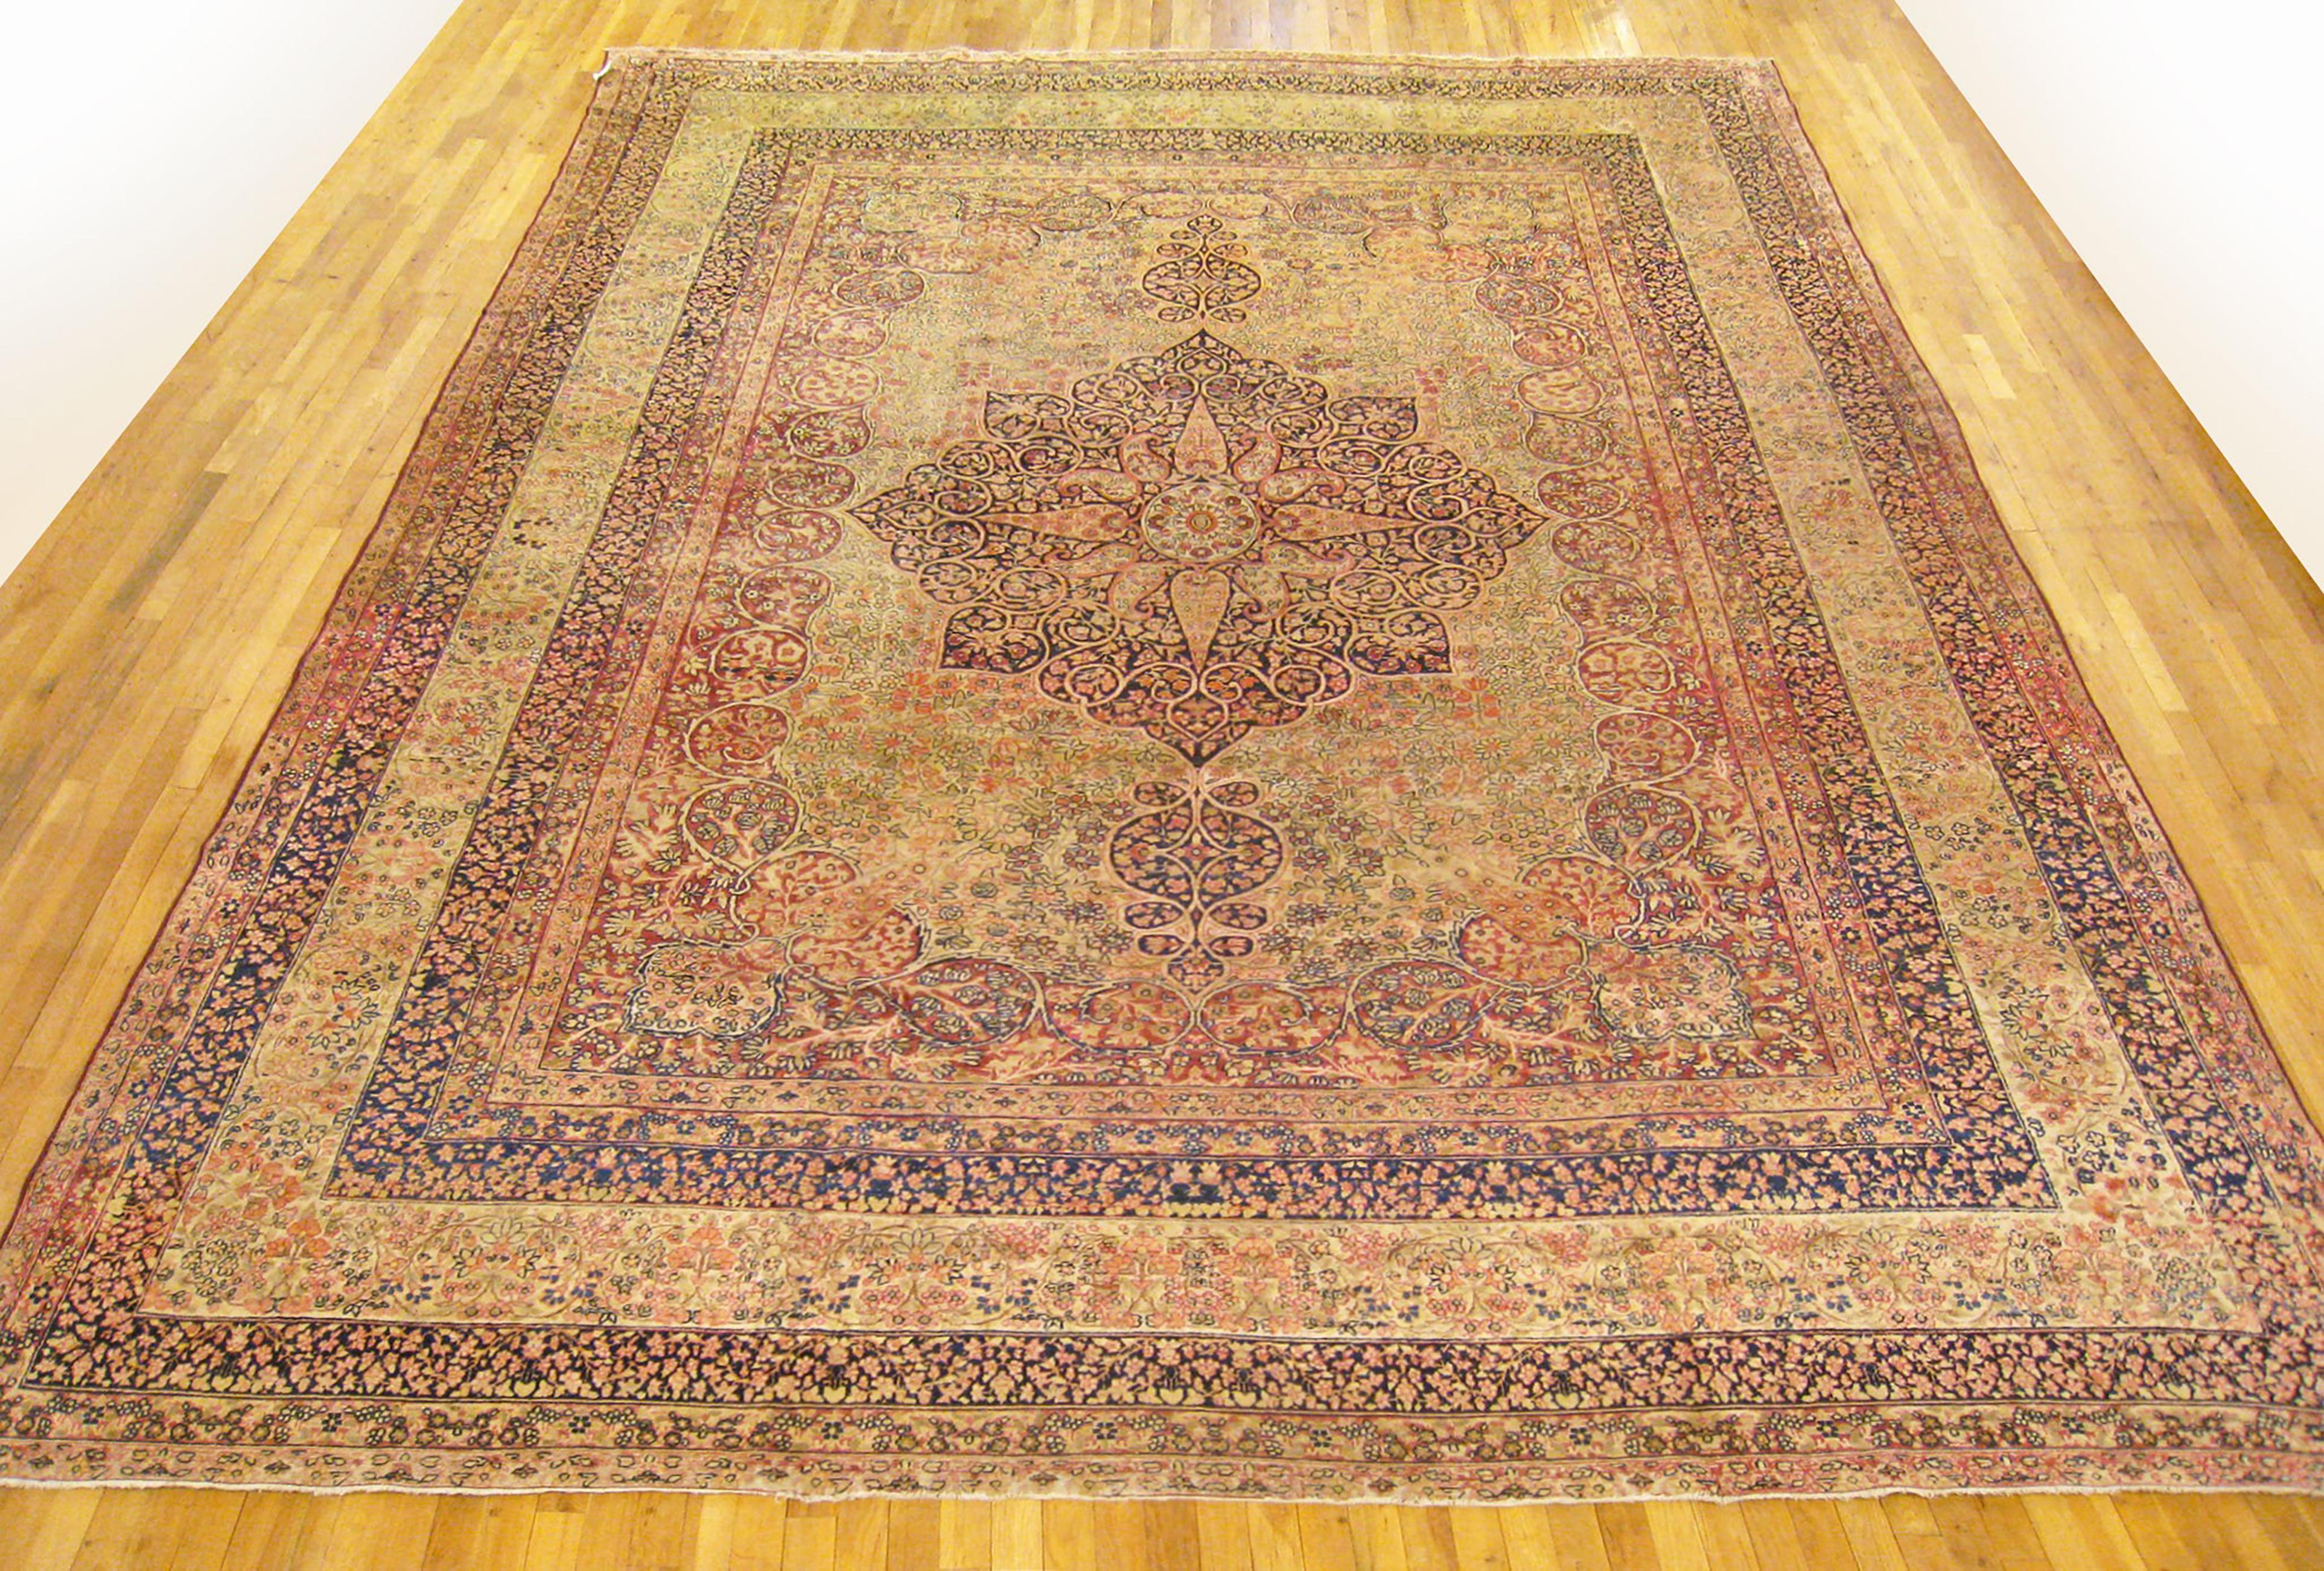 Antique Persian Lavar Oriental Carpet, Large Size, circa 1890

An antique Persian Lavar oriental carpet, size: 15'5